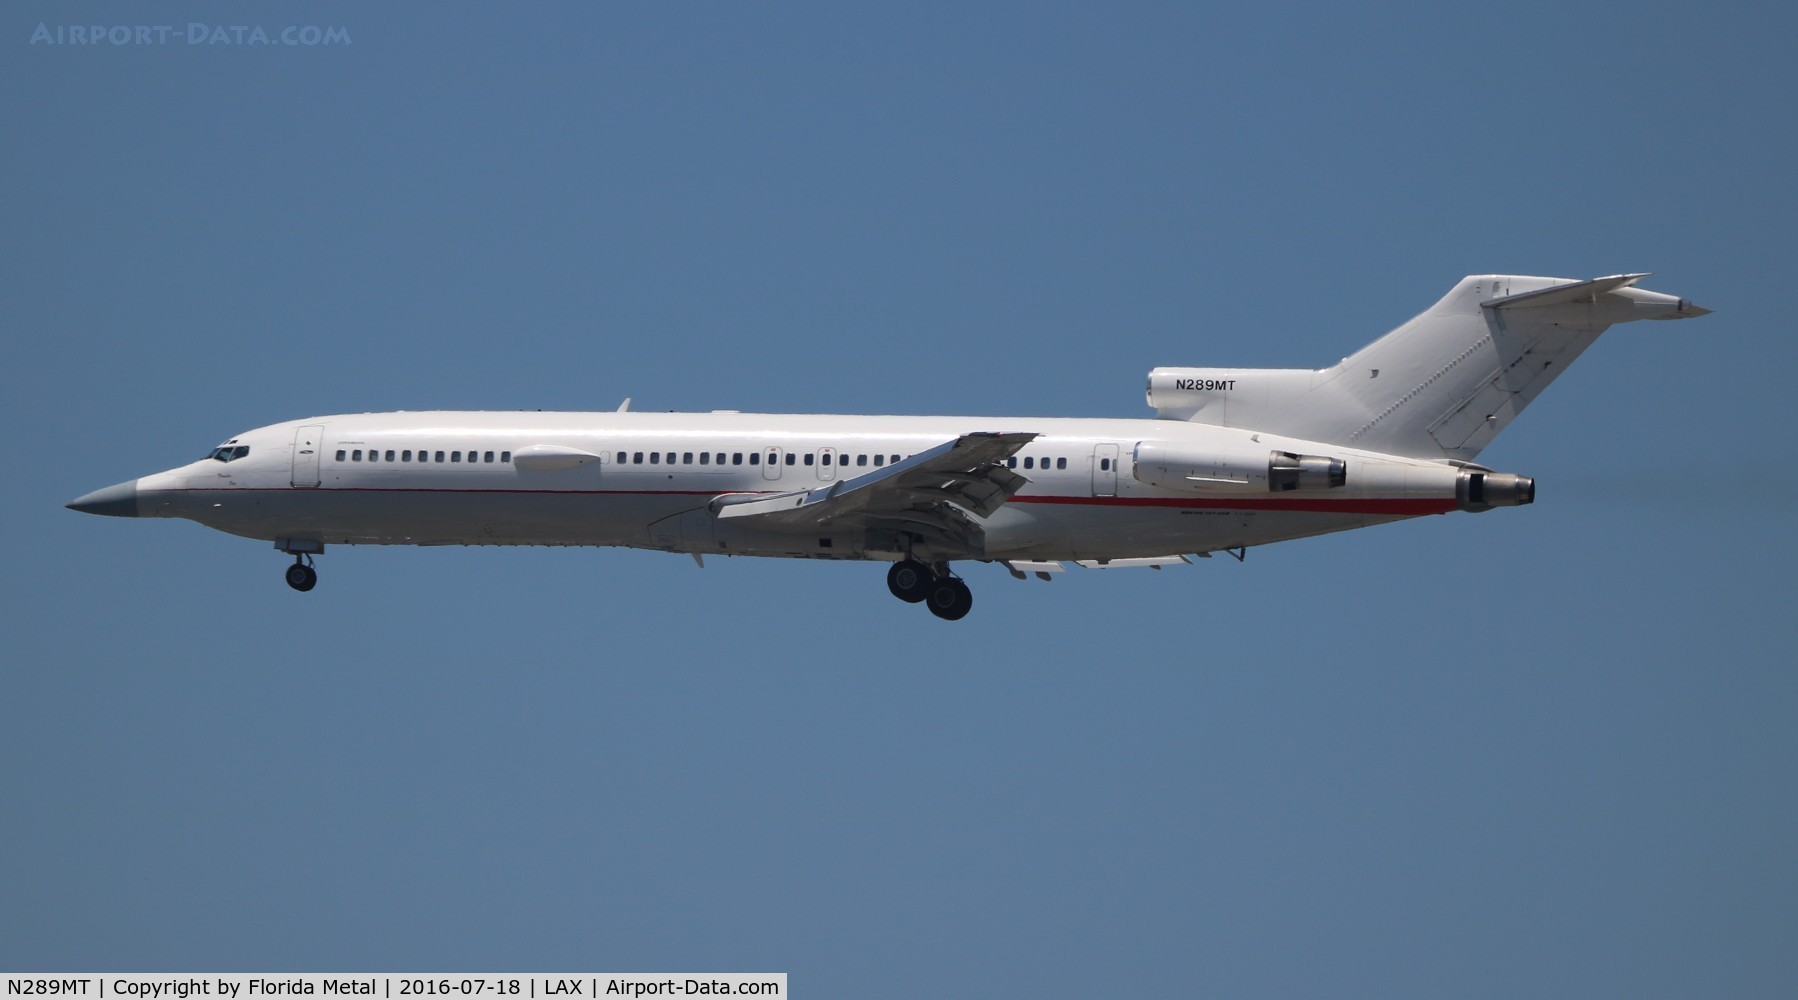 N289MT, 1981 Boeing 727-223 C/N 22467, 